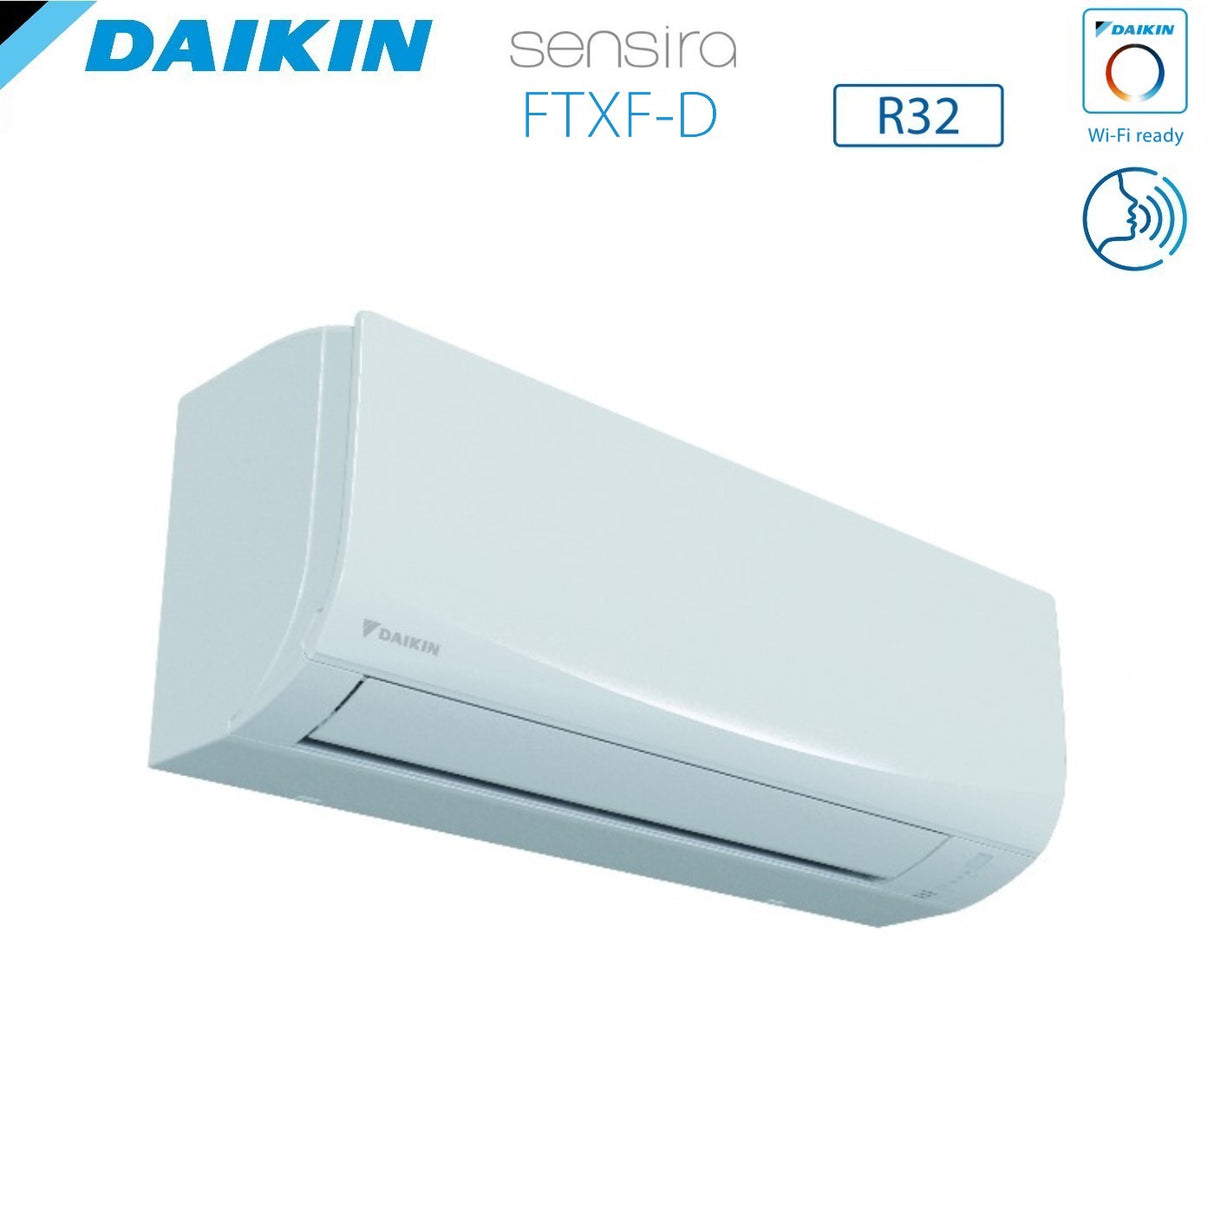 immagine-5-daikin-climatizzatore-condizionatore-daikin-inverter-serie-ecoplus-sensira-24000-btu-ftxf71cd-r-32-wi-fi-optional-classe-a-ean-8059657002969